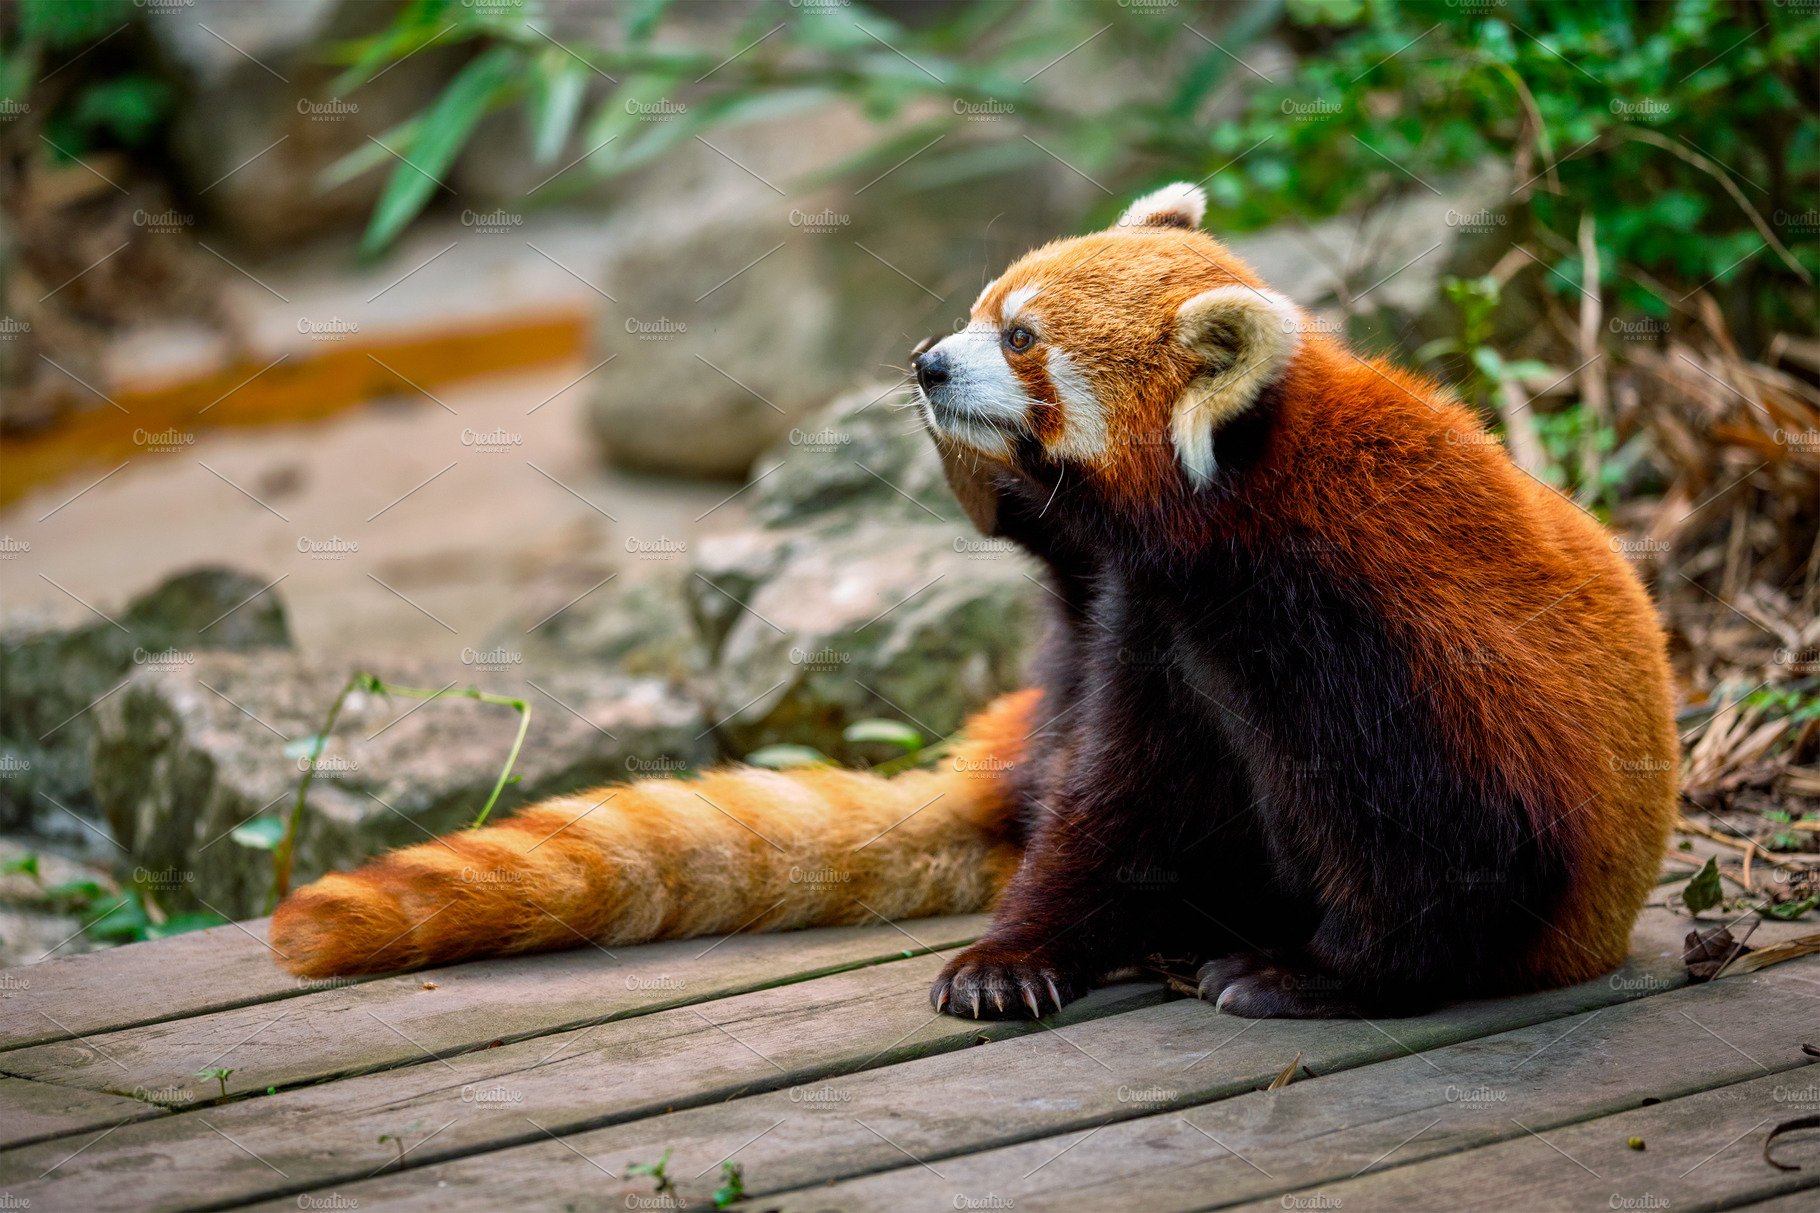 Red panda (lesser panda) cover image.